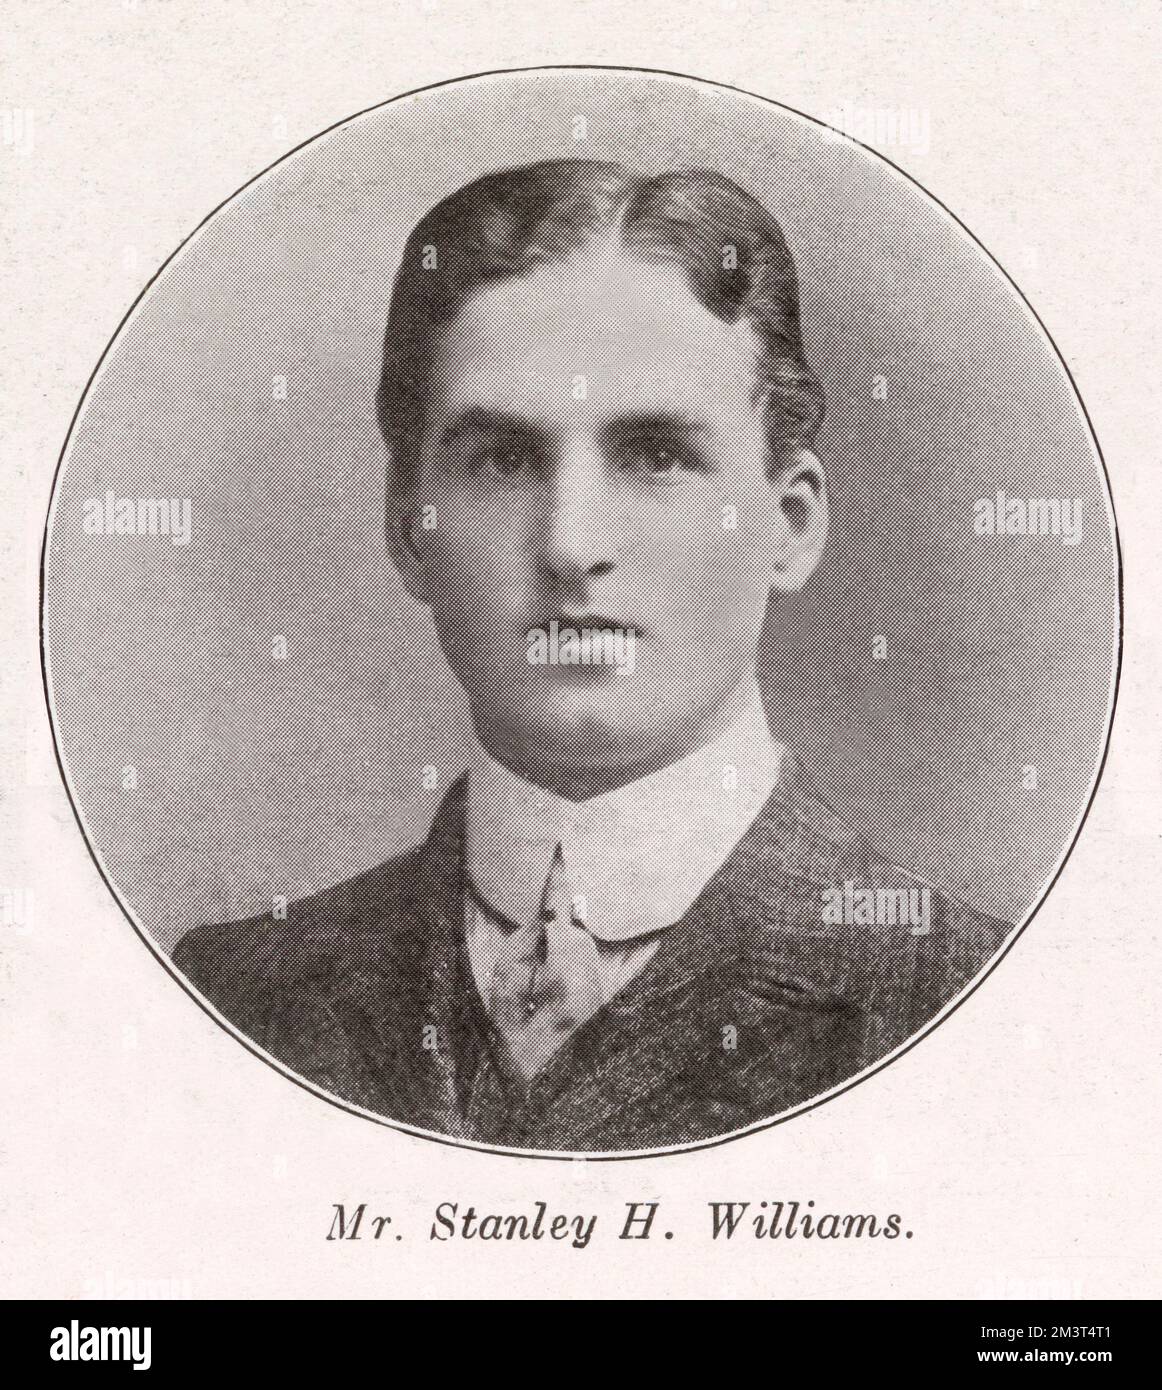 Horatio Stanley Williams DSO (2. November 1886 – 30. April 1936), walisischer Rugby-Gewerkschafter Fullback, der Rugby-Club für Newport spielte. Er gewann 4 Mützen für England und wurde für die British Lions 1910 Tour durch Südafrika ausgewählt, bei der er an allen drei Testspielen teilnahm. Stockfoto